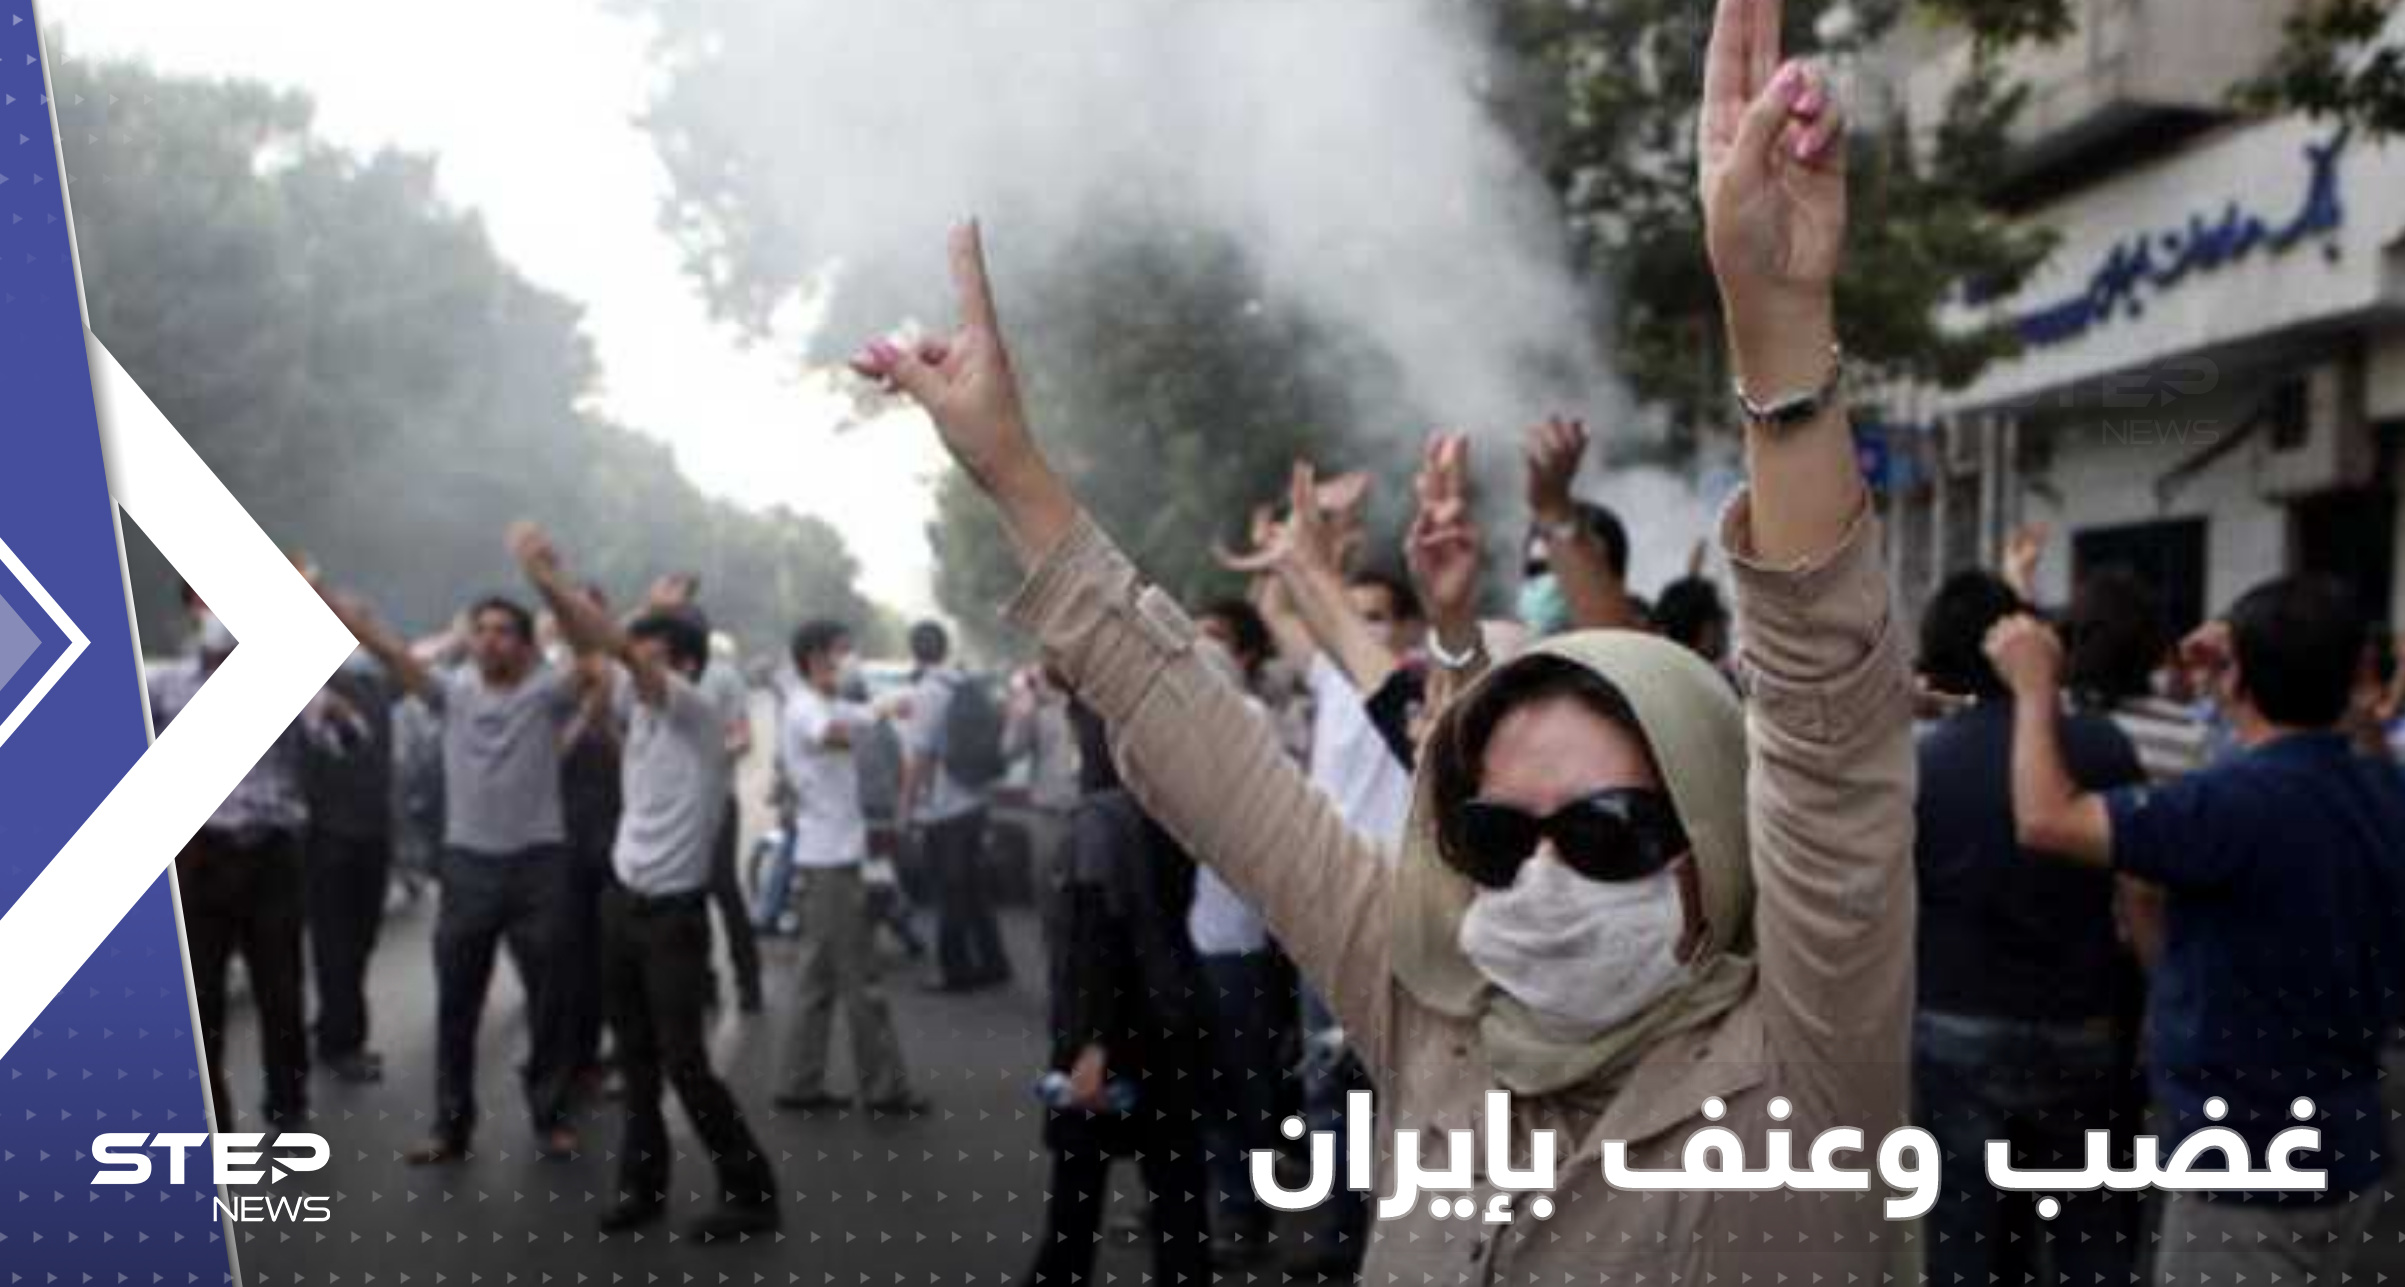 بالفيديو|| احتجاجات إيران تشتعل ضد النظام.. مشاهد عنف بأكبر مدن البلاد والباسيج تتدخل